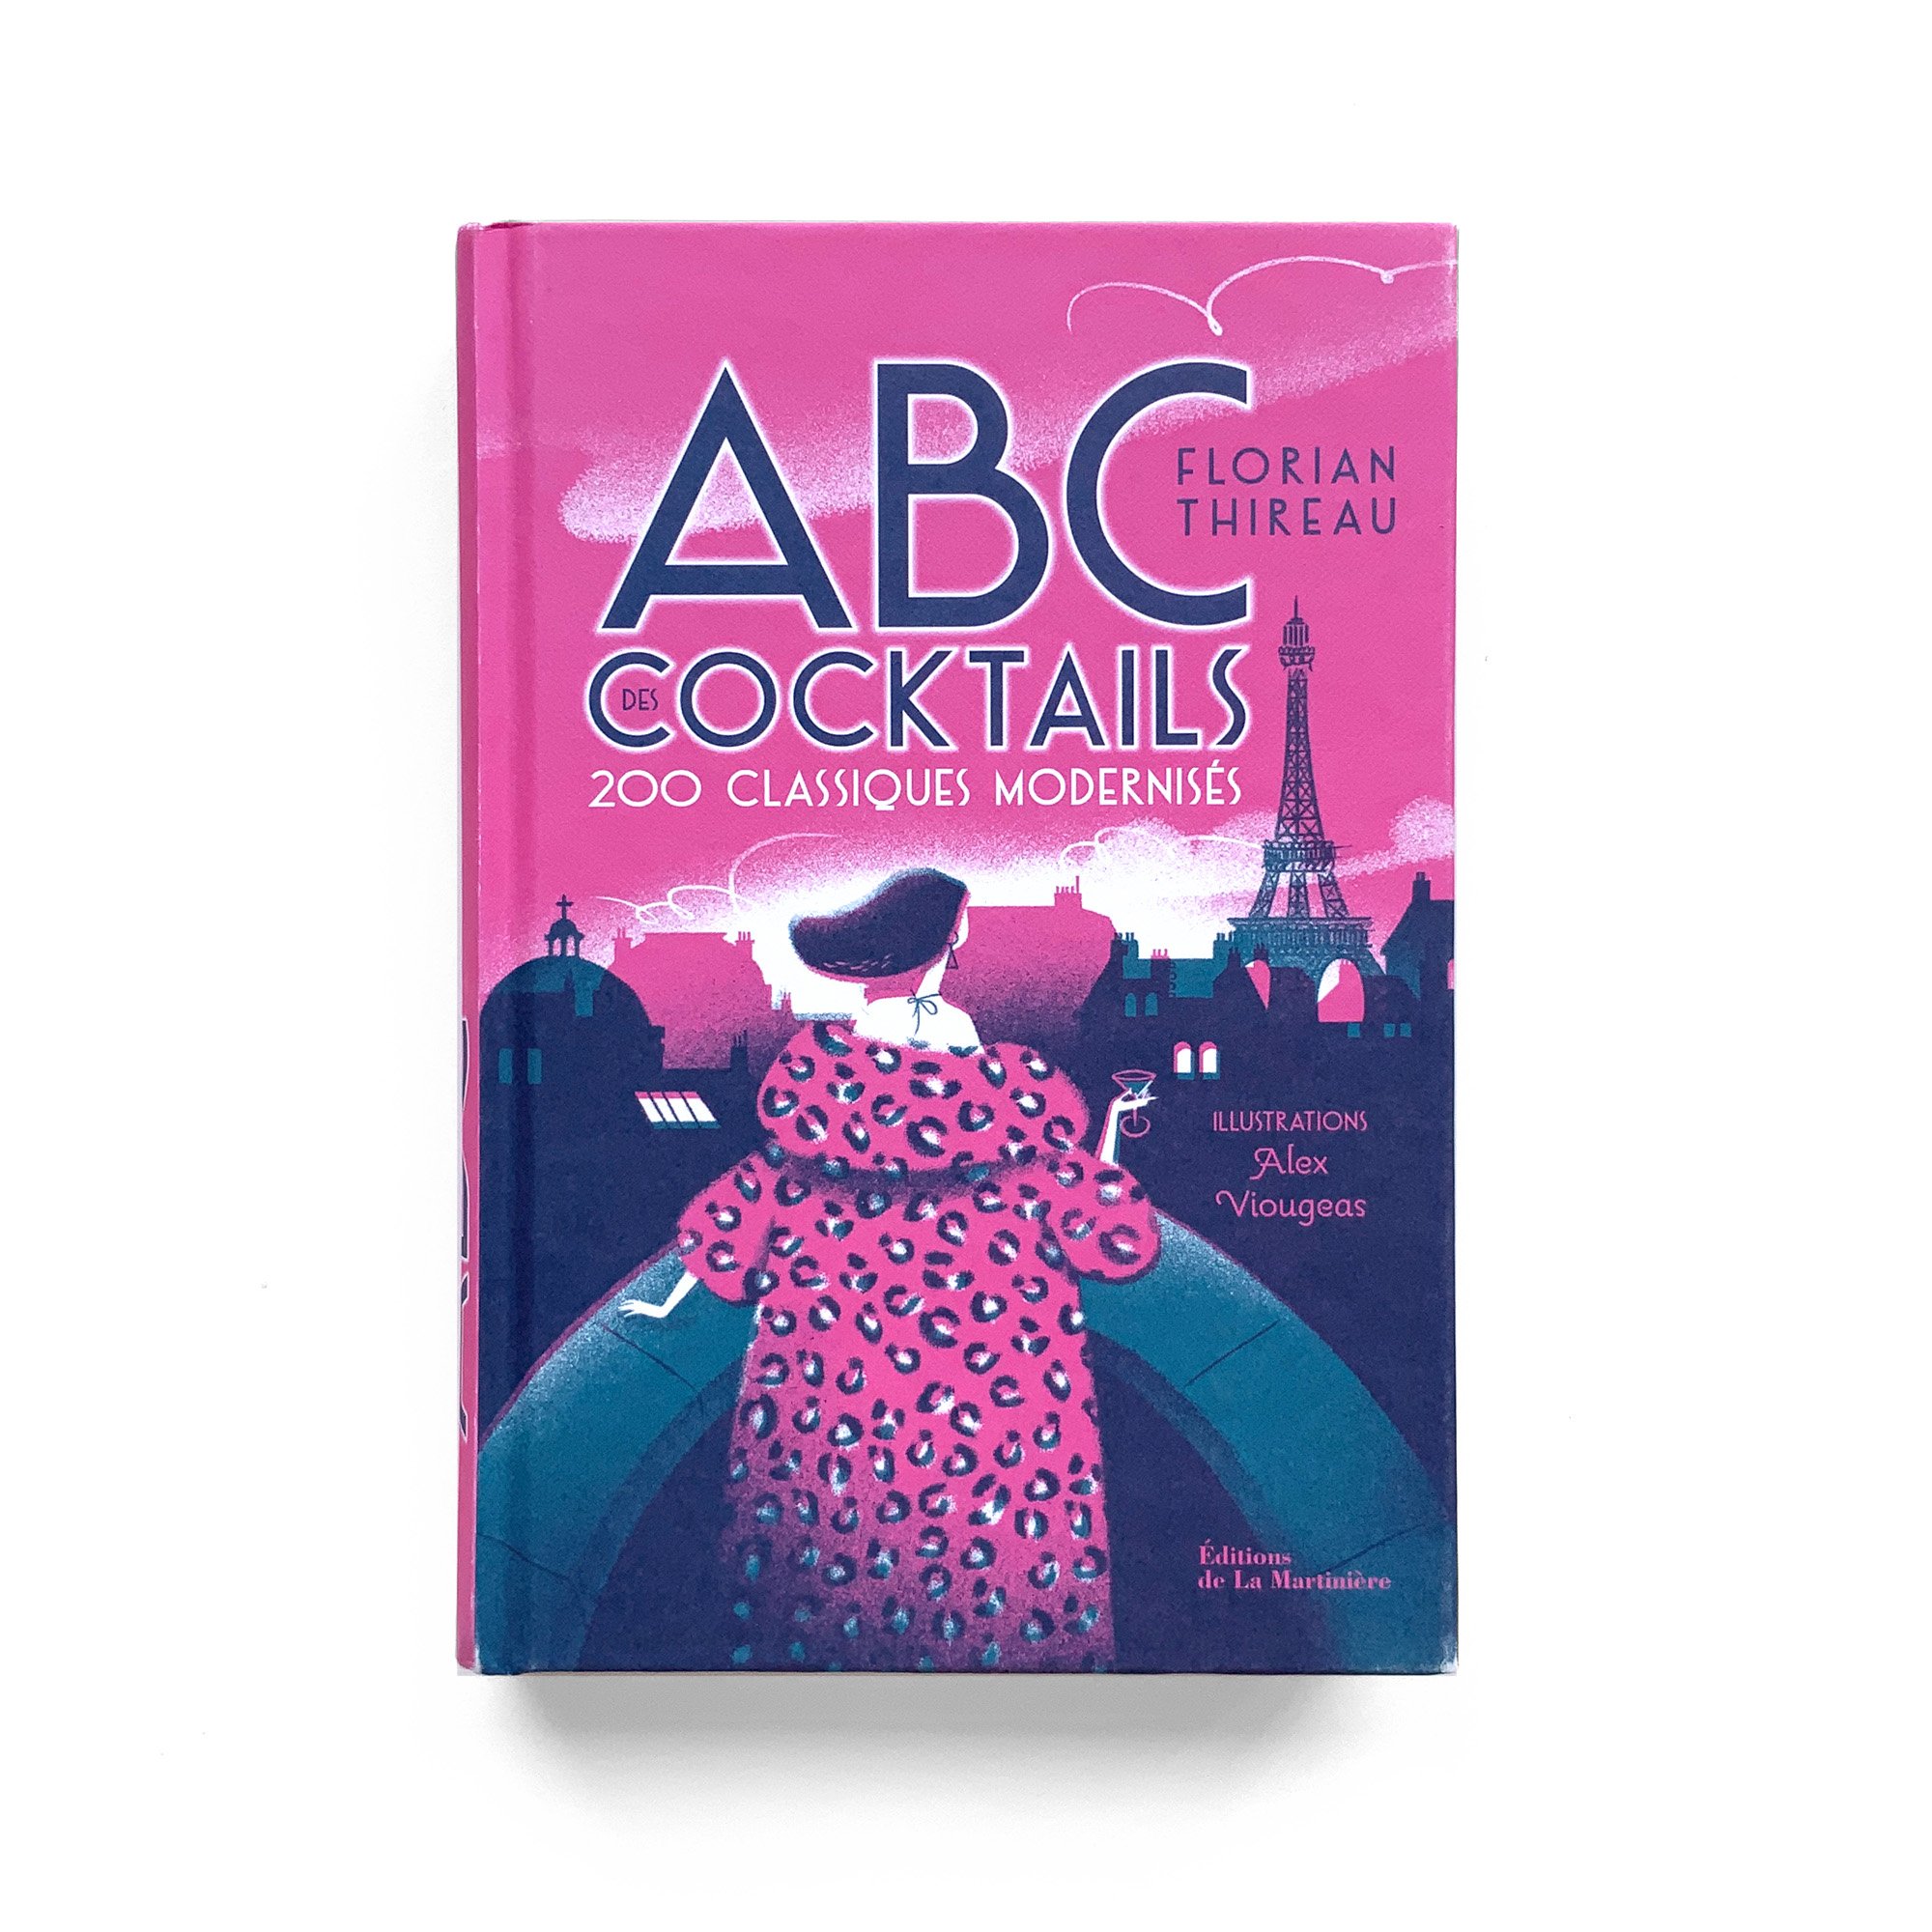   ABC des Cocktails  Florian Thireau  Édition de La Martinière 404 pages 